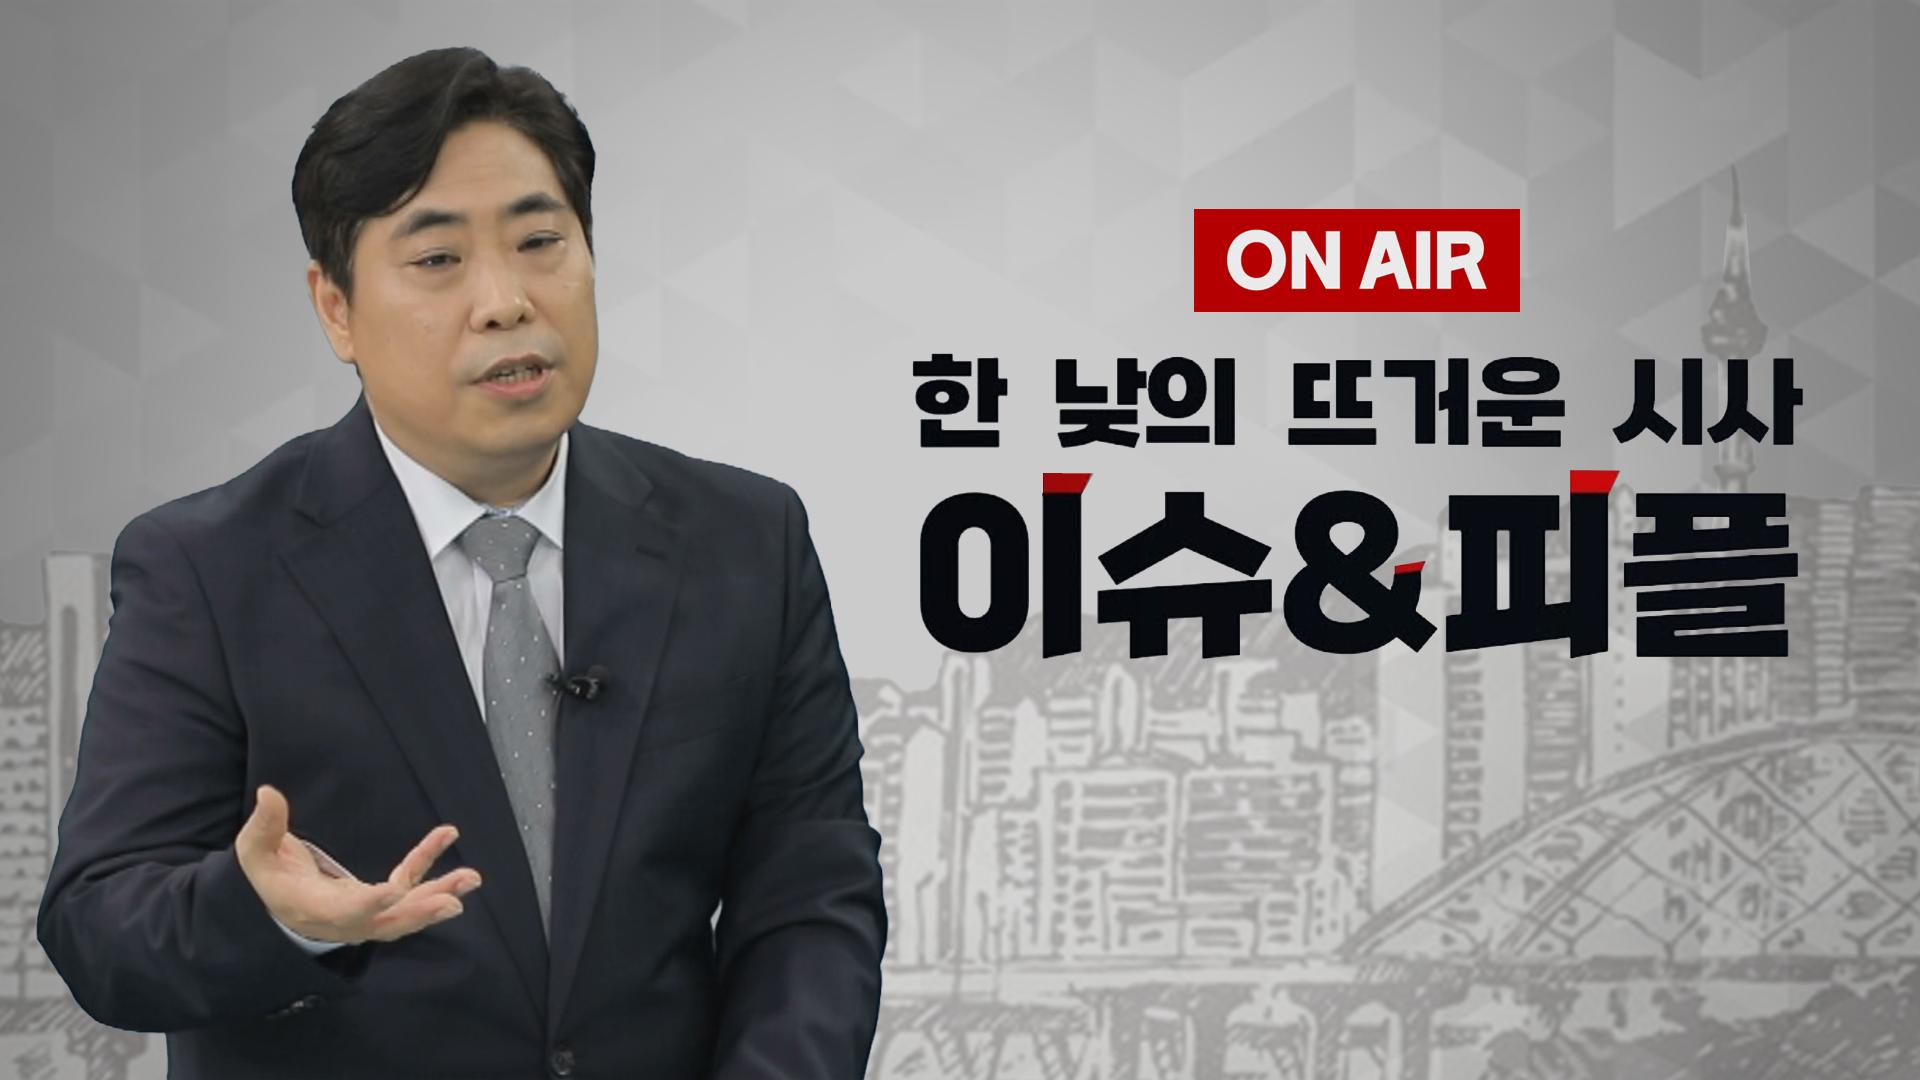 [이앤피] 박원석“與 국회의원 증원 반대, 기득권 때문... 600명은 돼야 정치개혁”